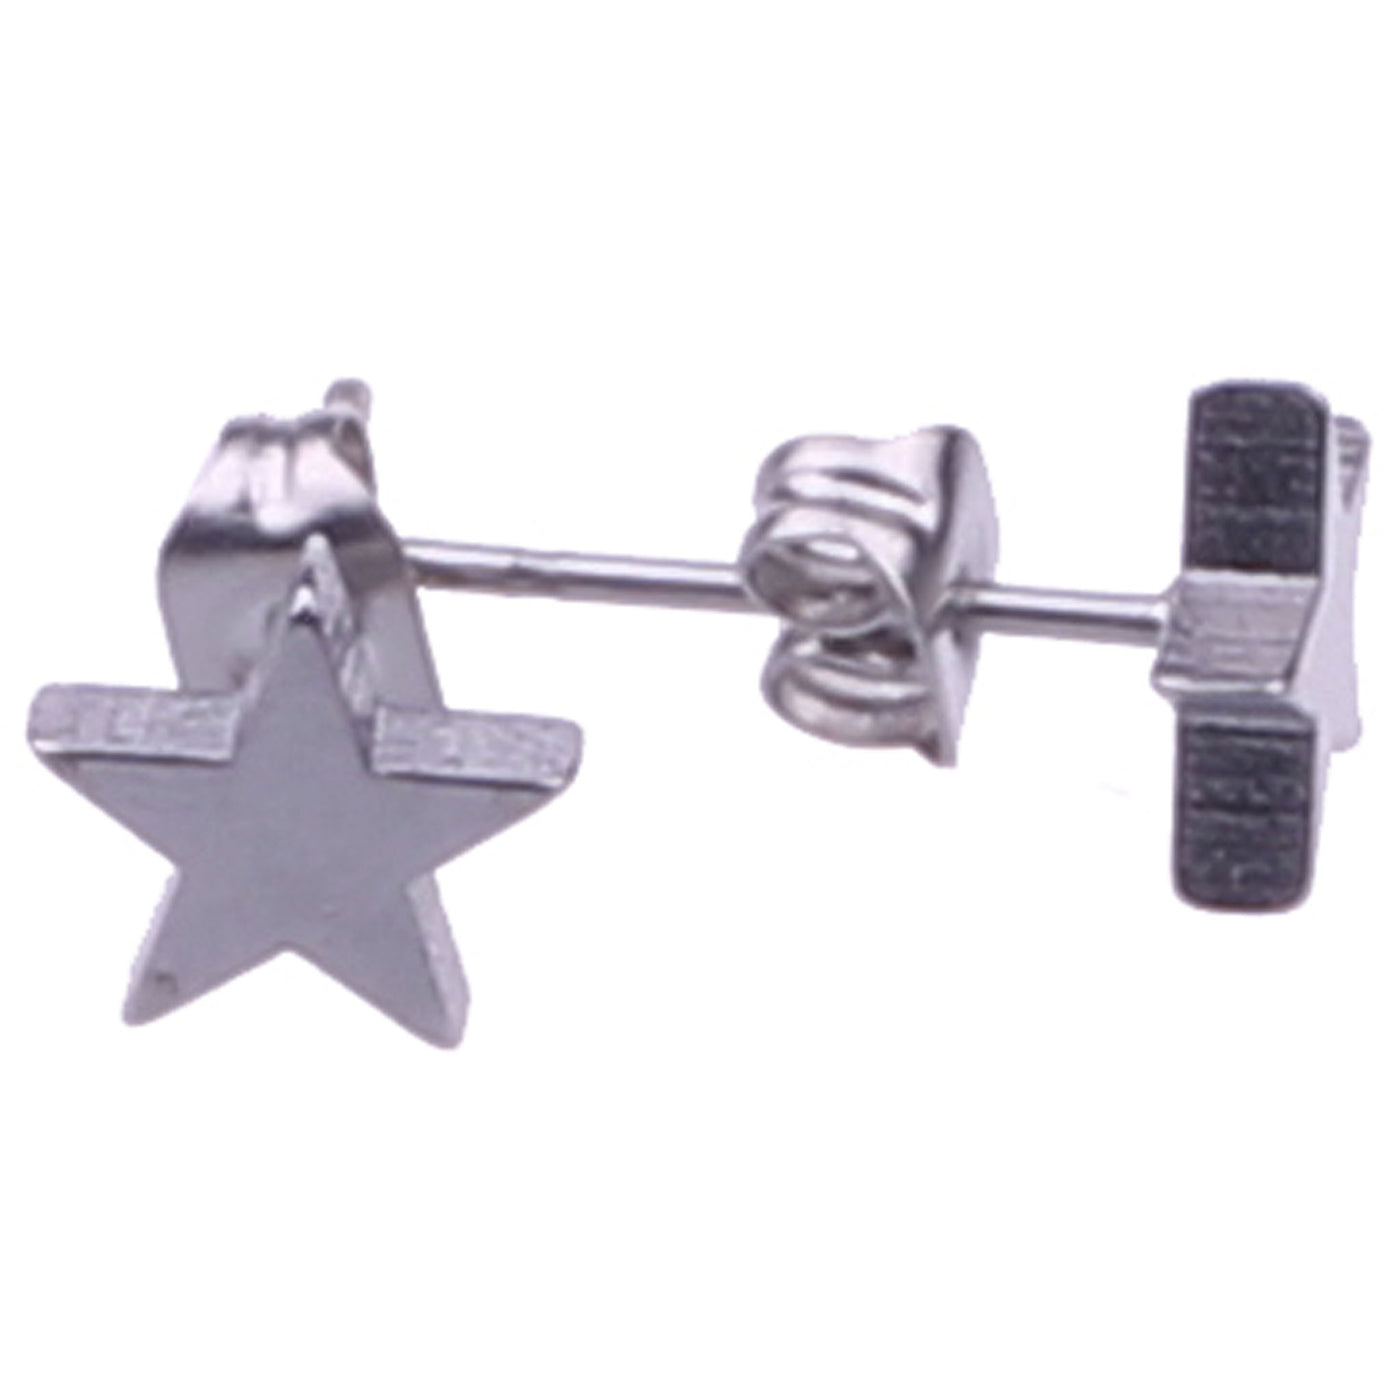 Steel earrings star